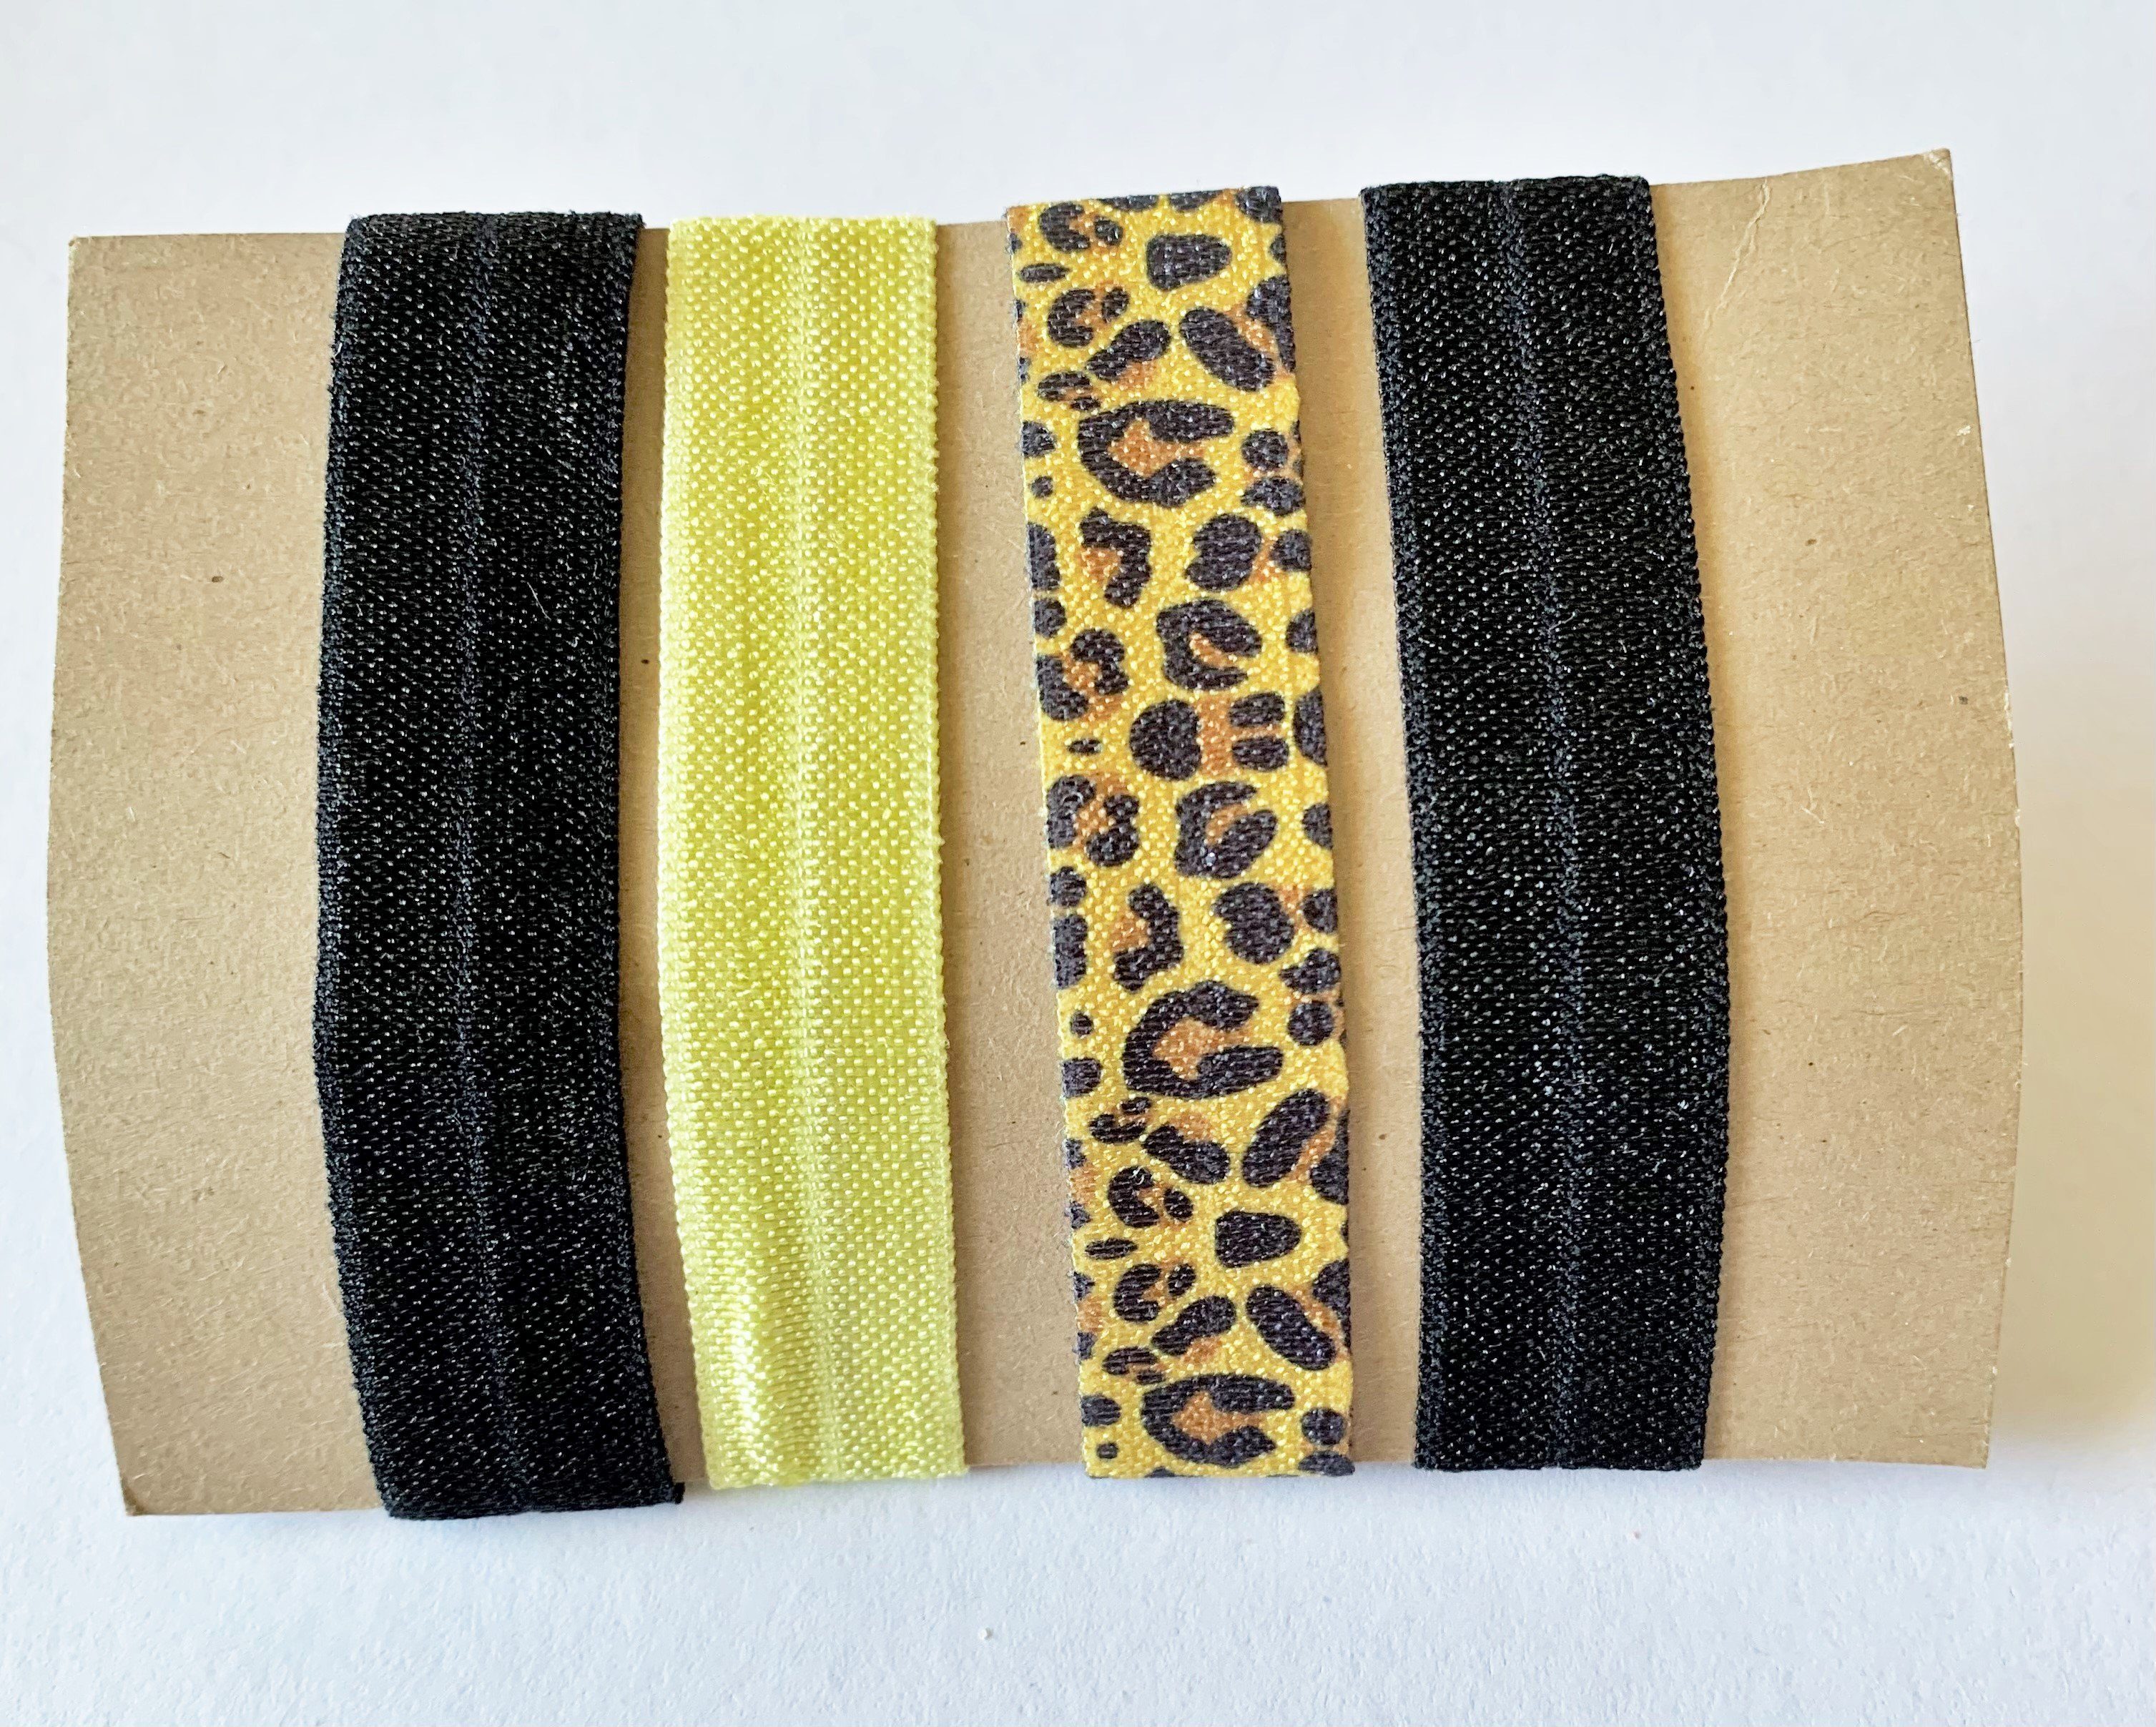 LK Trend & Style Zopfband elastisches Haarband oder Armband, für die Festival Frisur, cooles Armband, Das Haarband läßt sich perfekt als Armband tragen. Sehr angesagt! Leopard Hellgelb